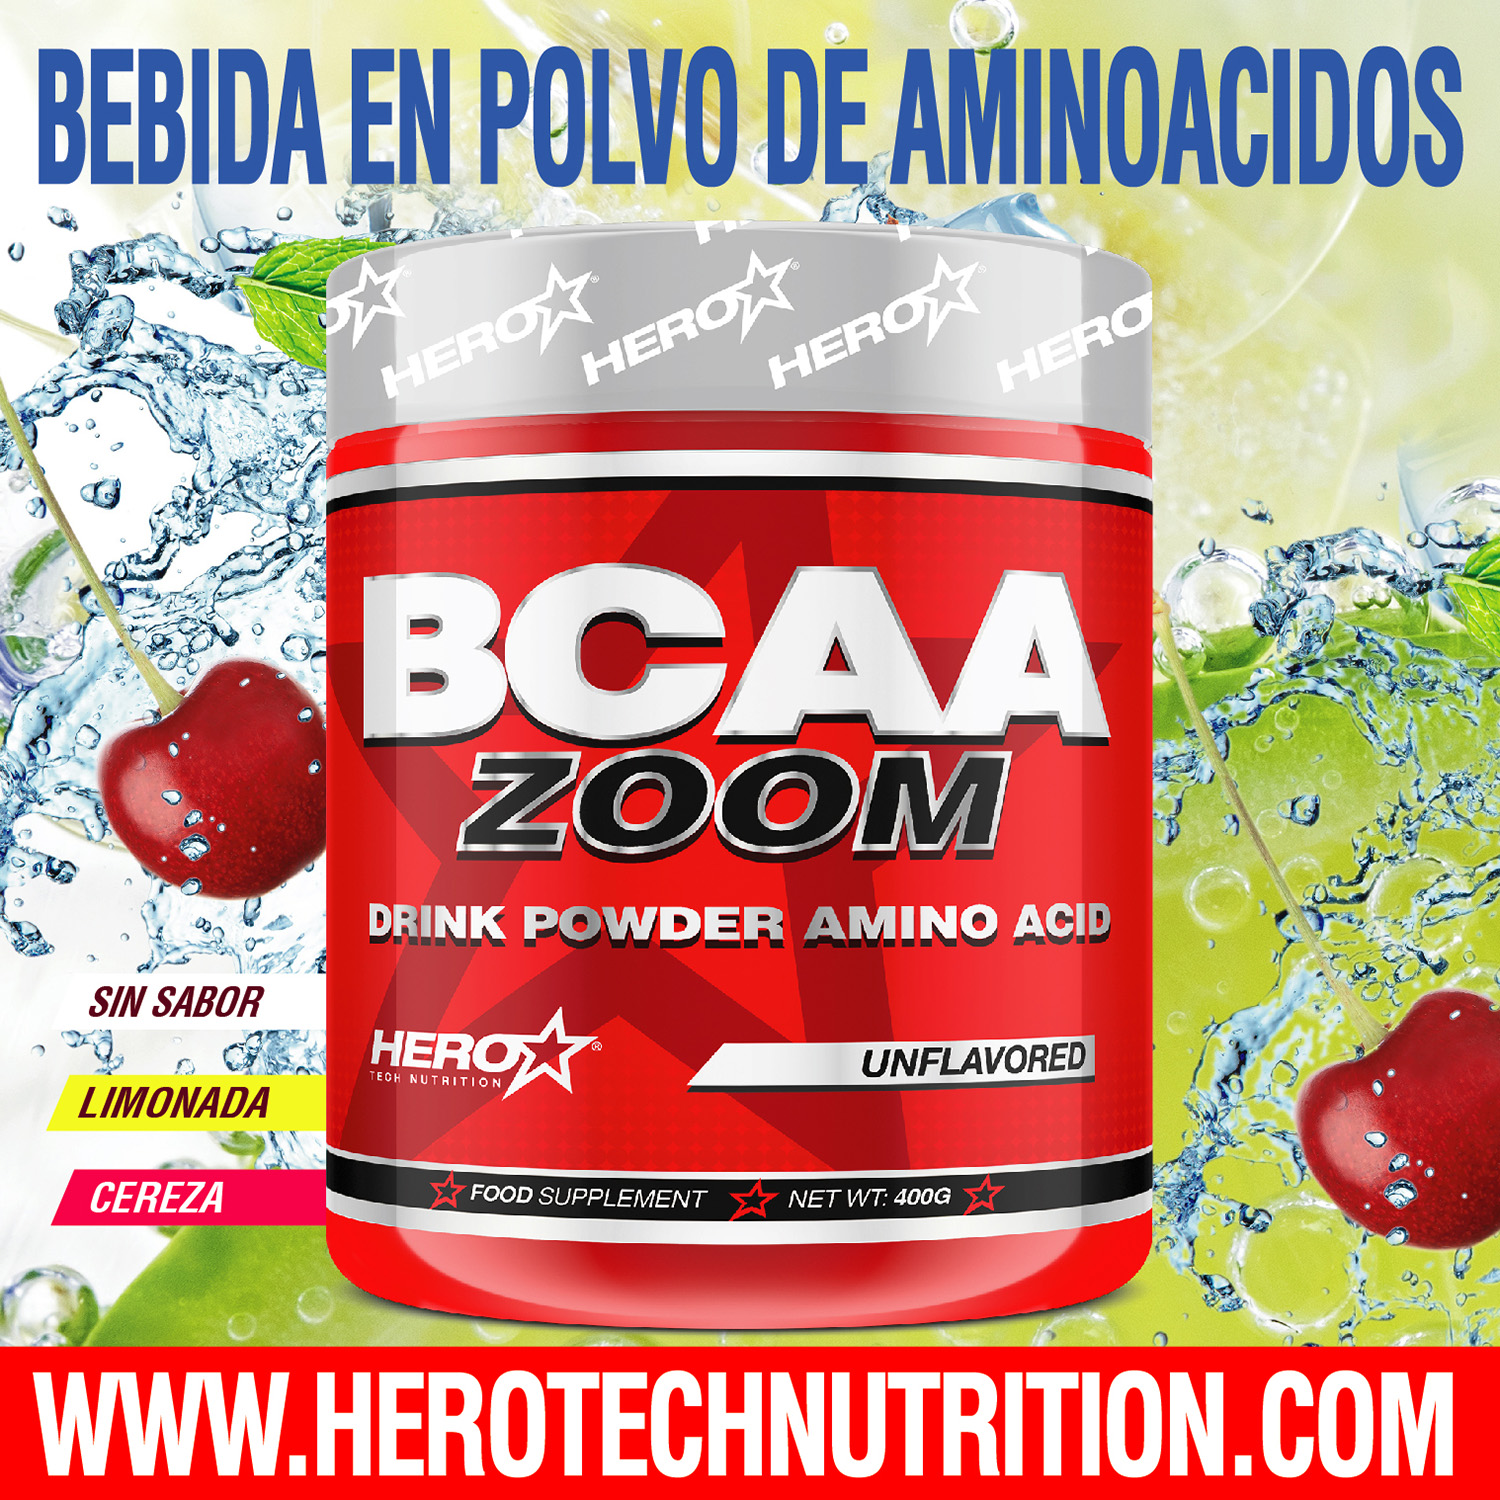 BCAA ZOOM AMINOACIDOS - HERO TECH NUTRITION herotechnutrition